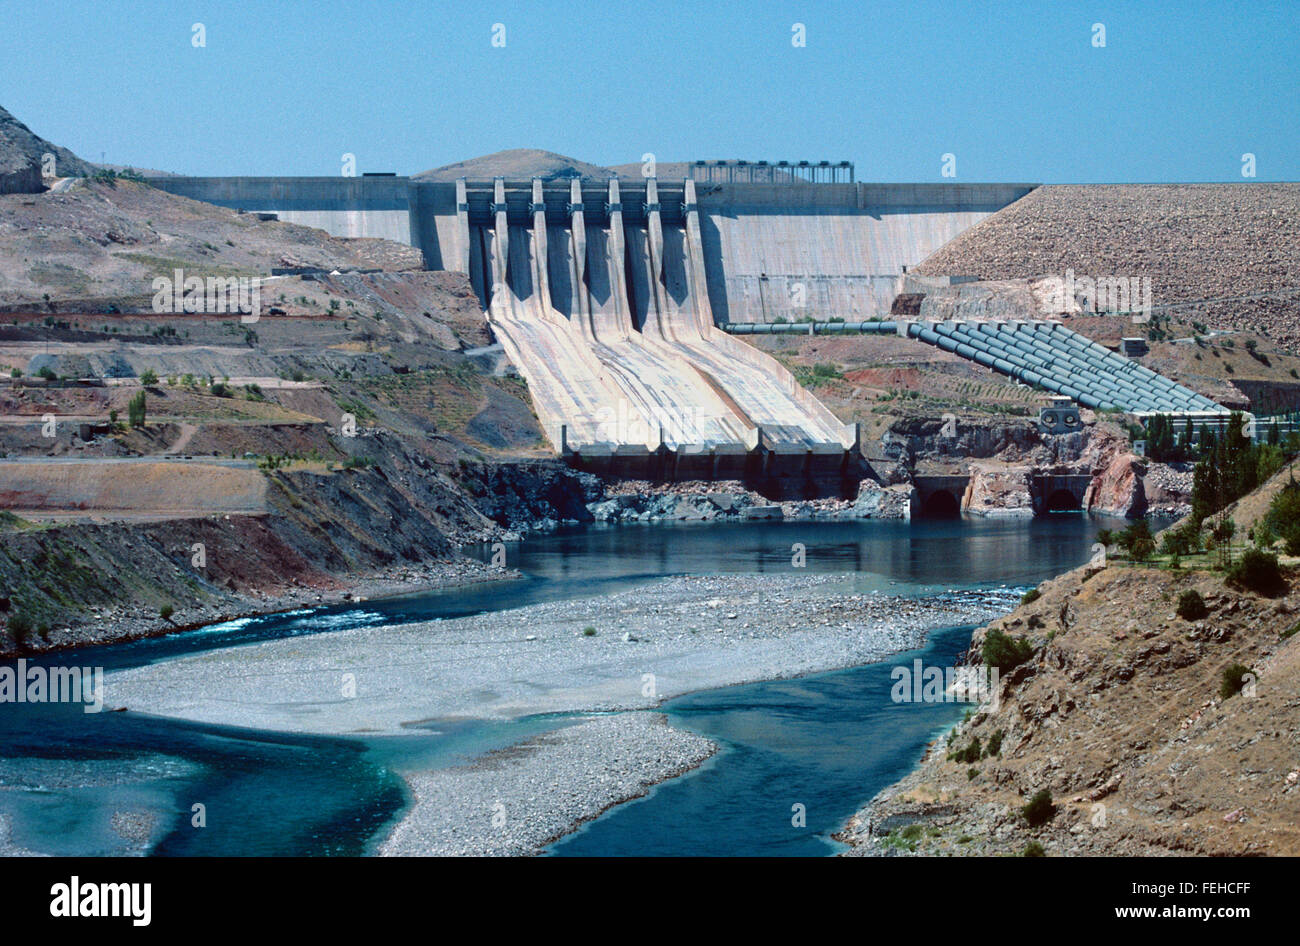 Barrage de Keban barrage hydroélectrique sur l'Euphrate, Elazig, au sud-est de la Turquie. Banque D'Images